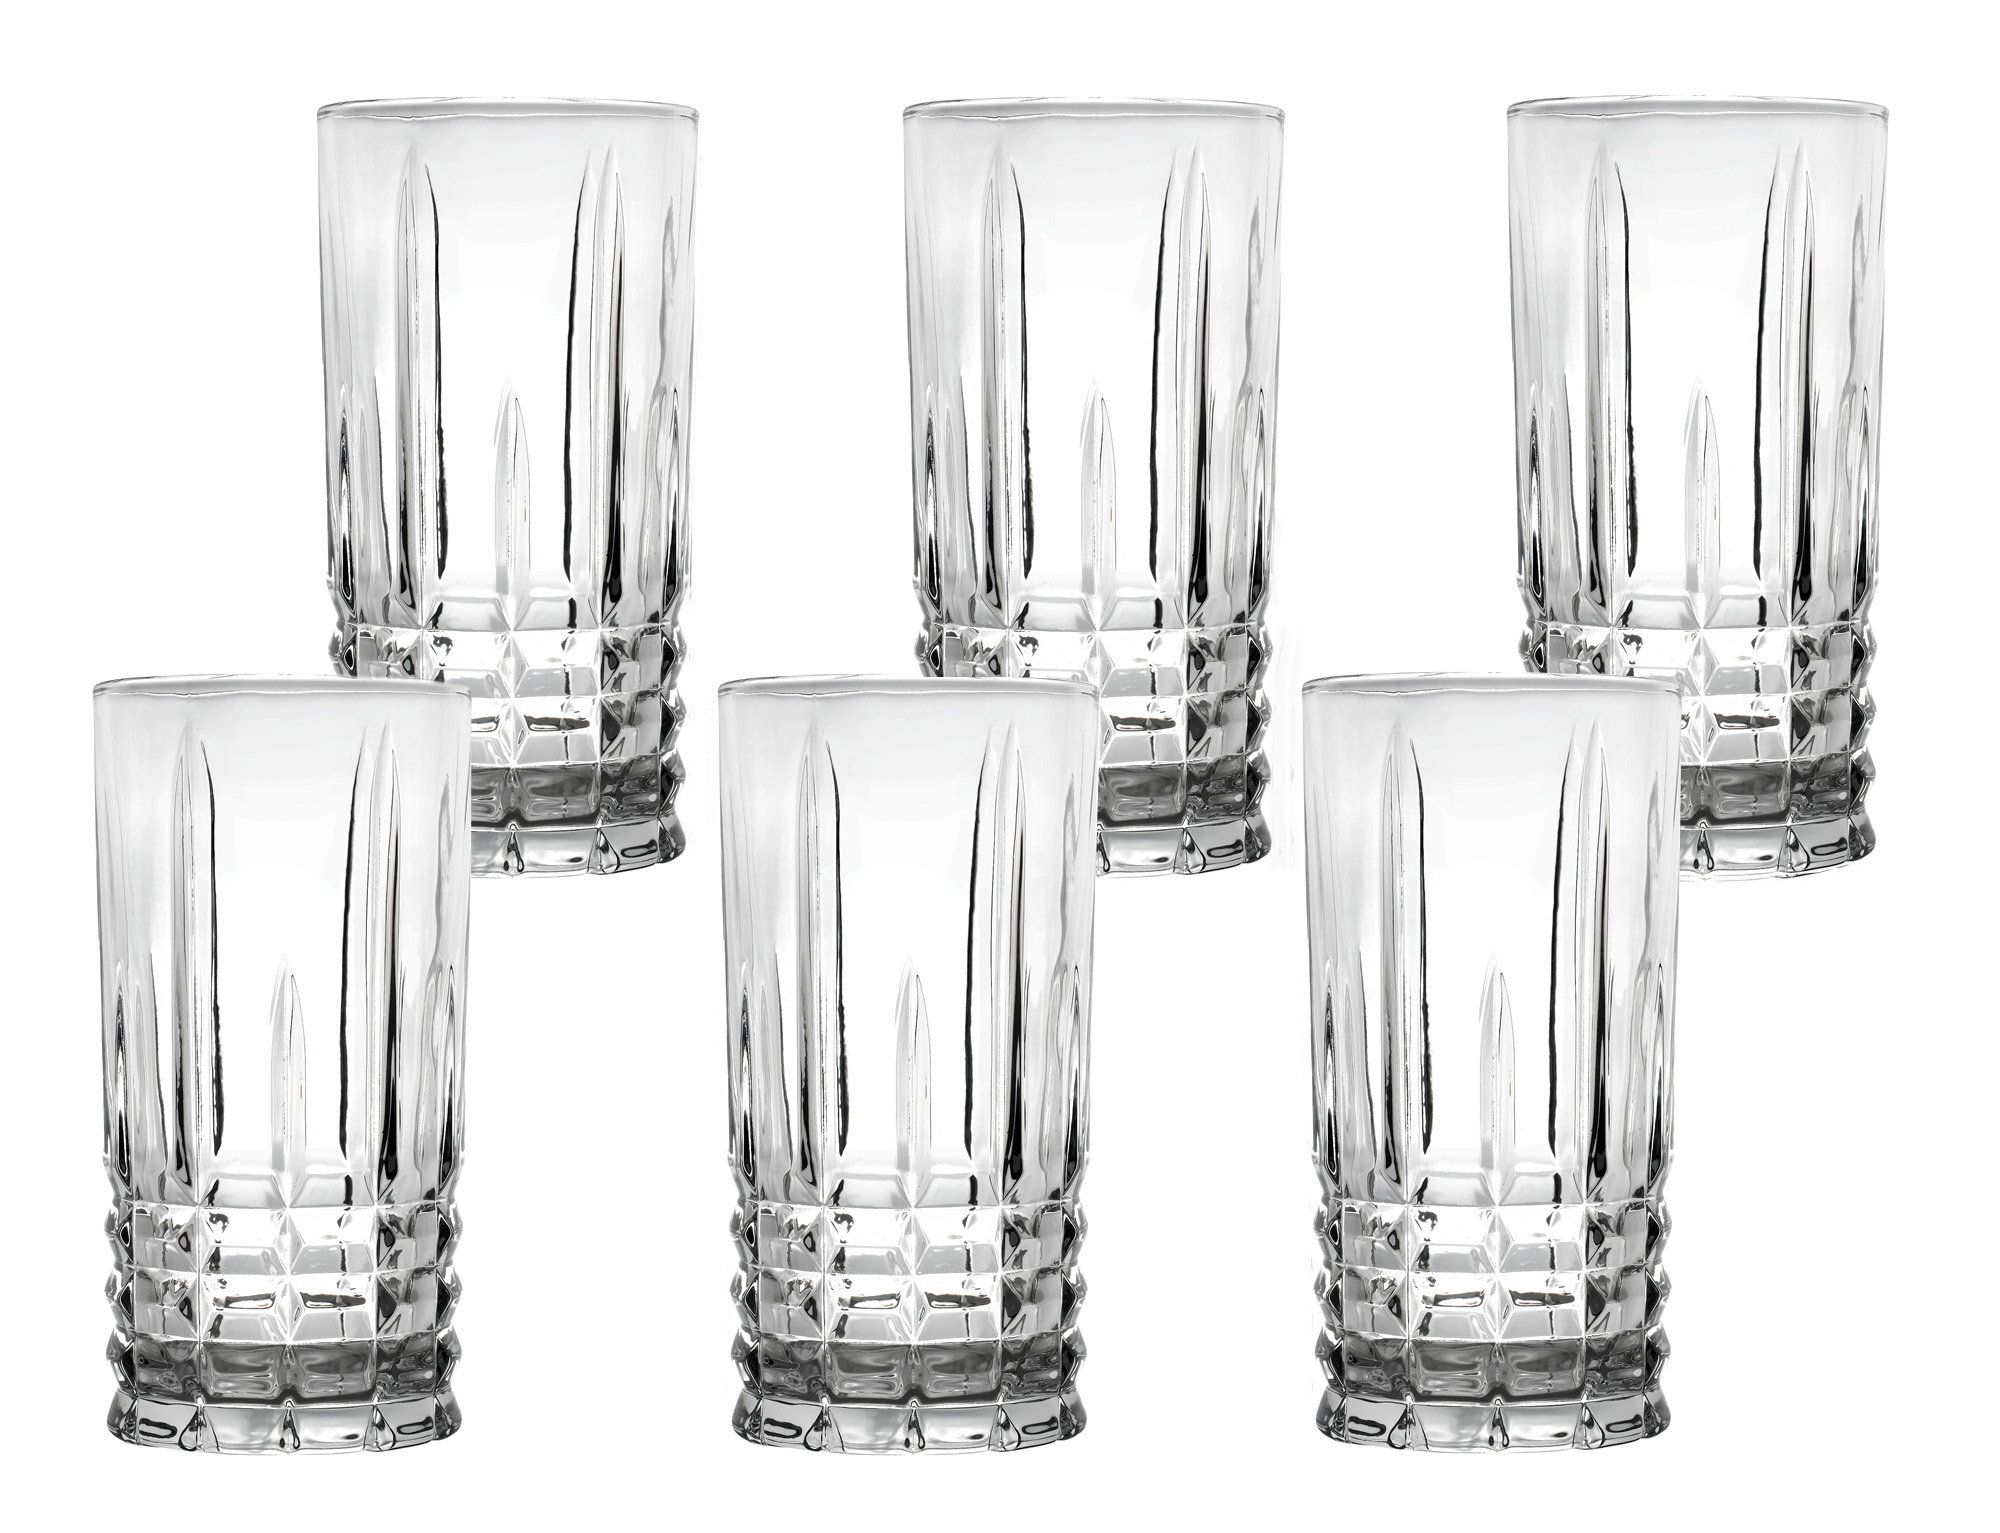 https://assets.wfcdn.com/im/64692080/compr-r85/2517/251736518/lorren-home-trends-tall-12-ounce-drinking-glass-textured-cut-glass.jpg